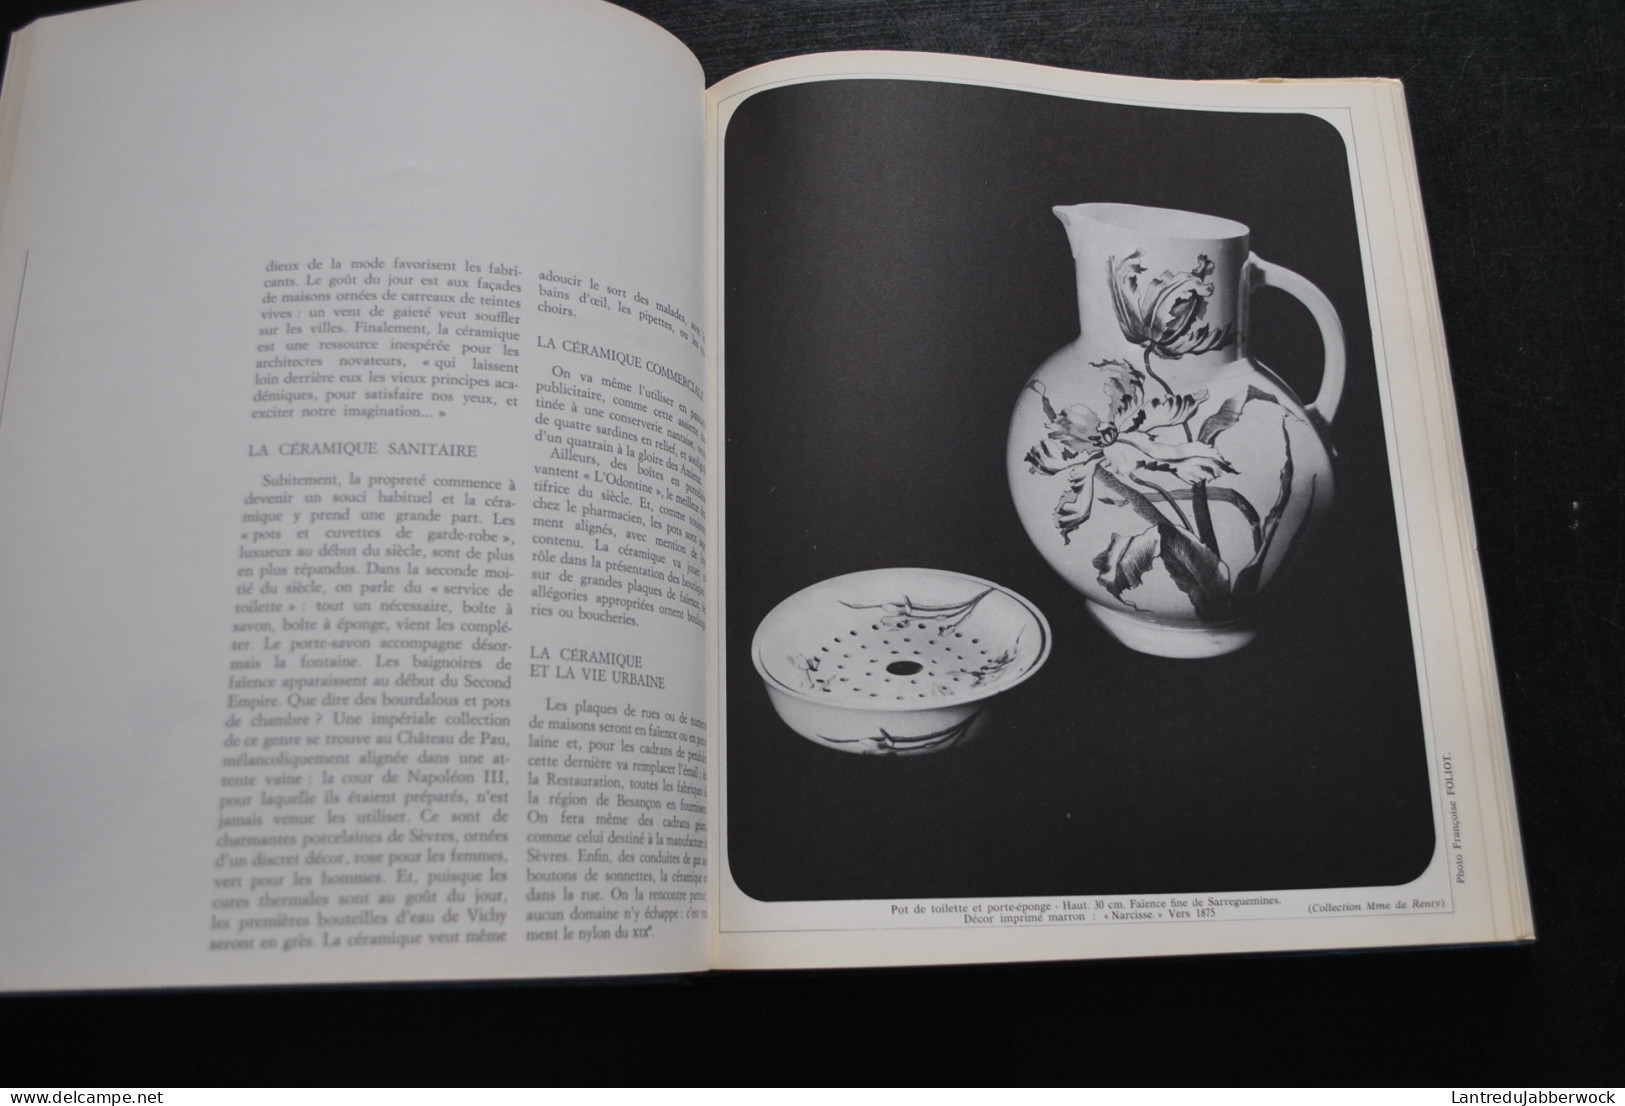 ERNOULD-GANDOUET La céramique en France au XIXè siècle GRUND 1969 marques cachets poterie faience fine porcelaine grès